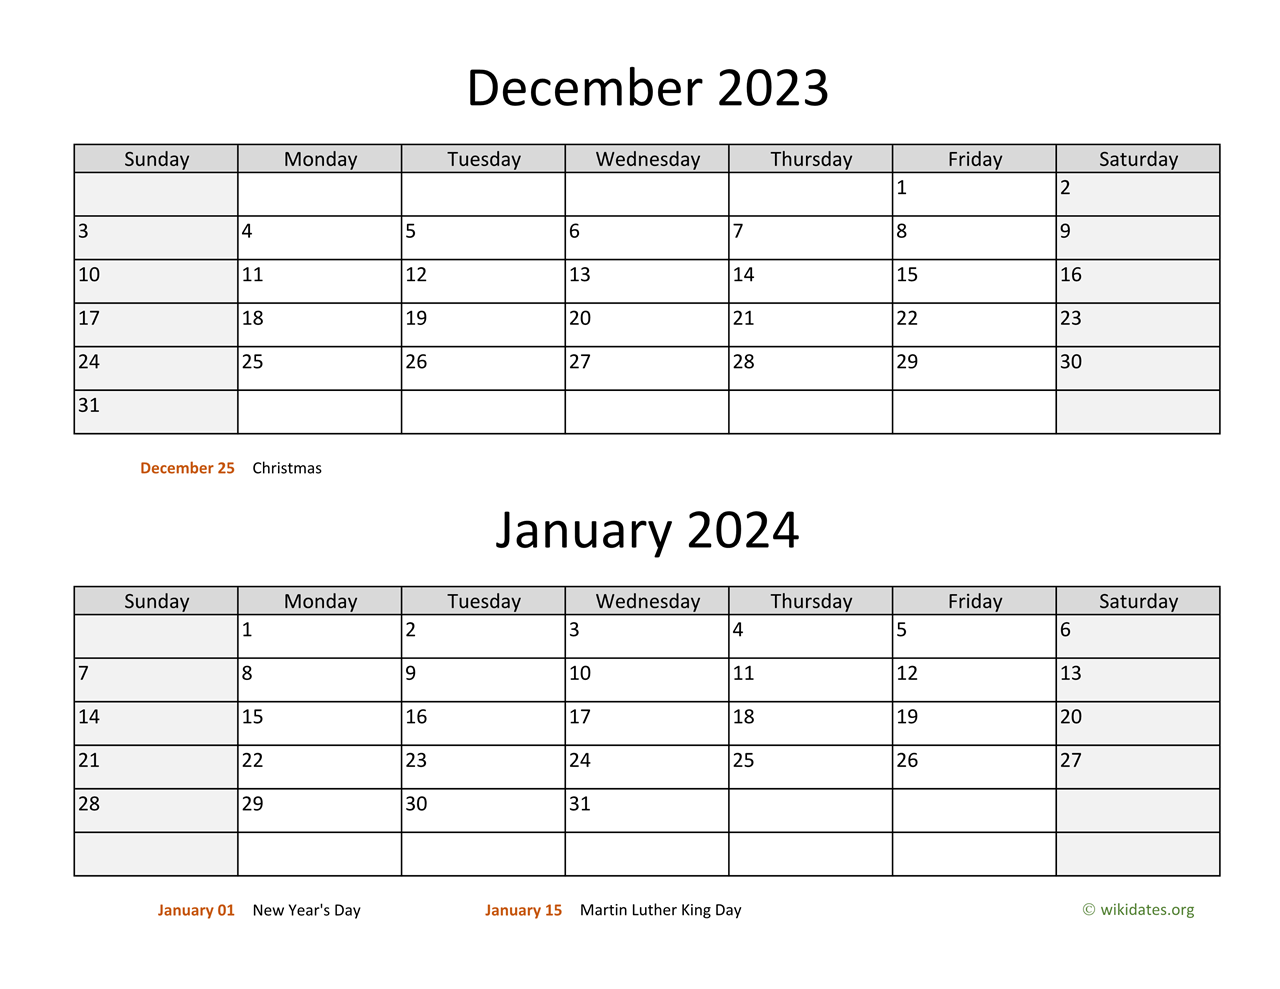 December 2023 Calendar January 2024 Calendar Get Calendar 2023 Update